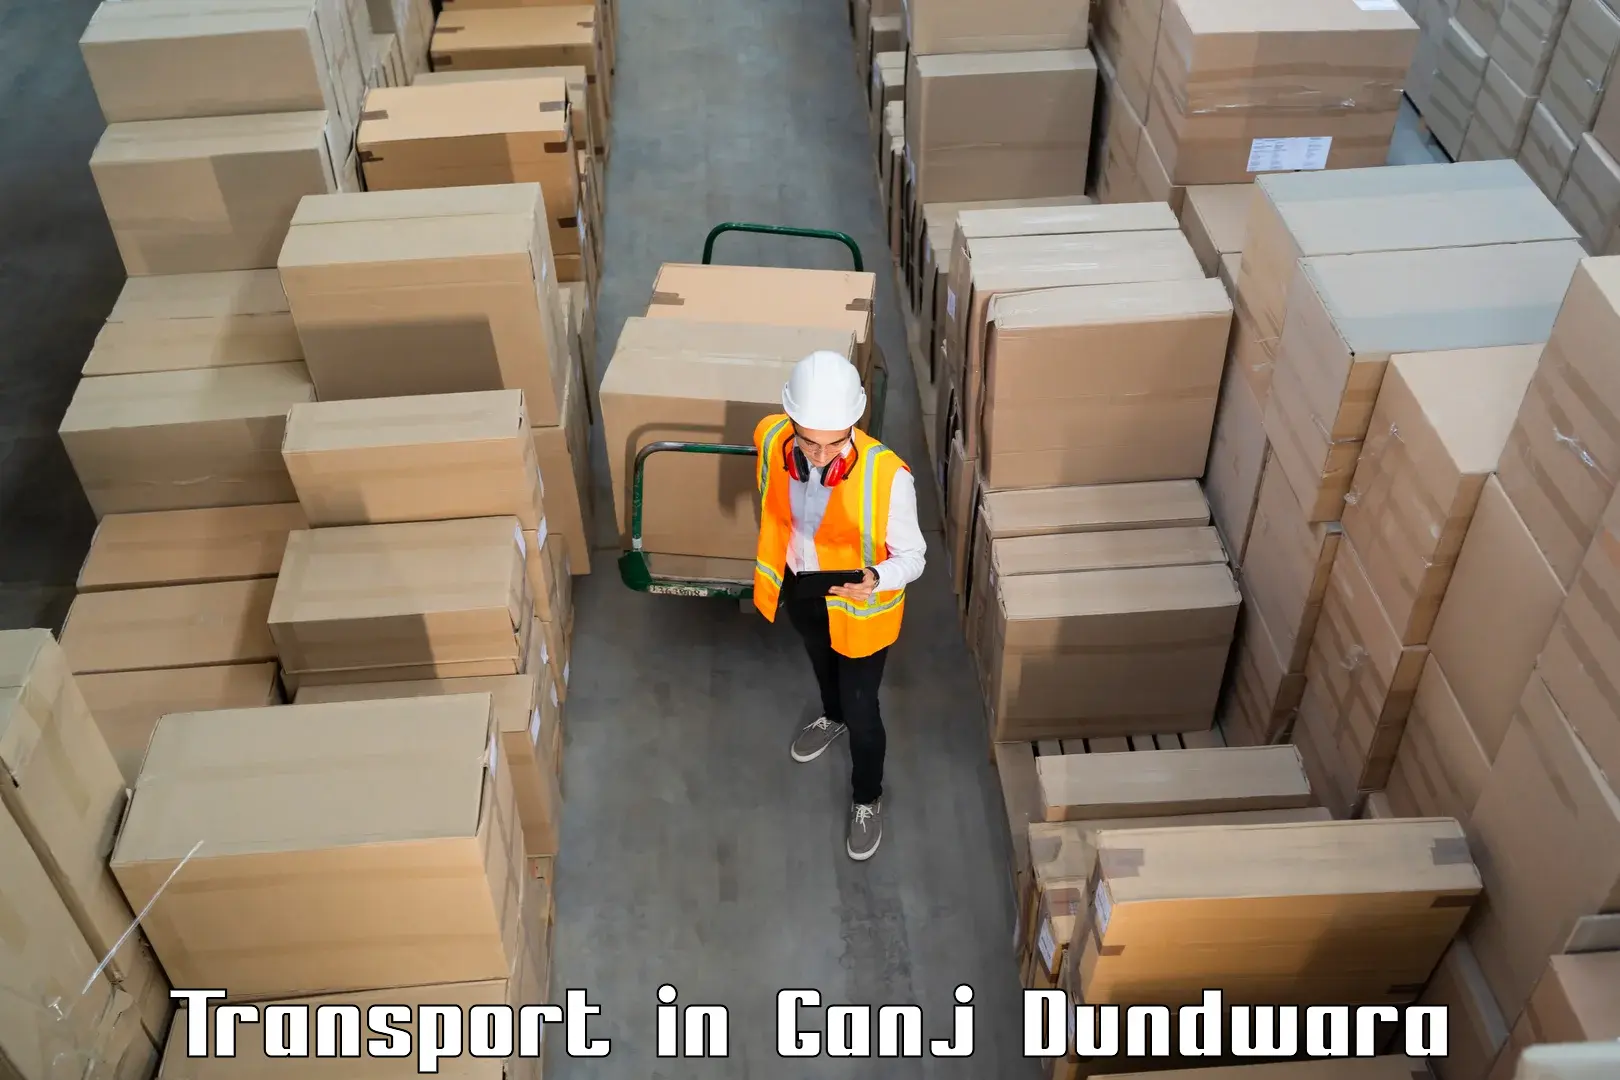 Domestic goods transportation services in Ganj Dundwara